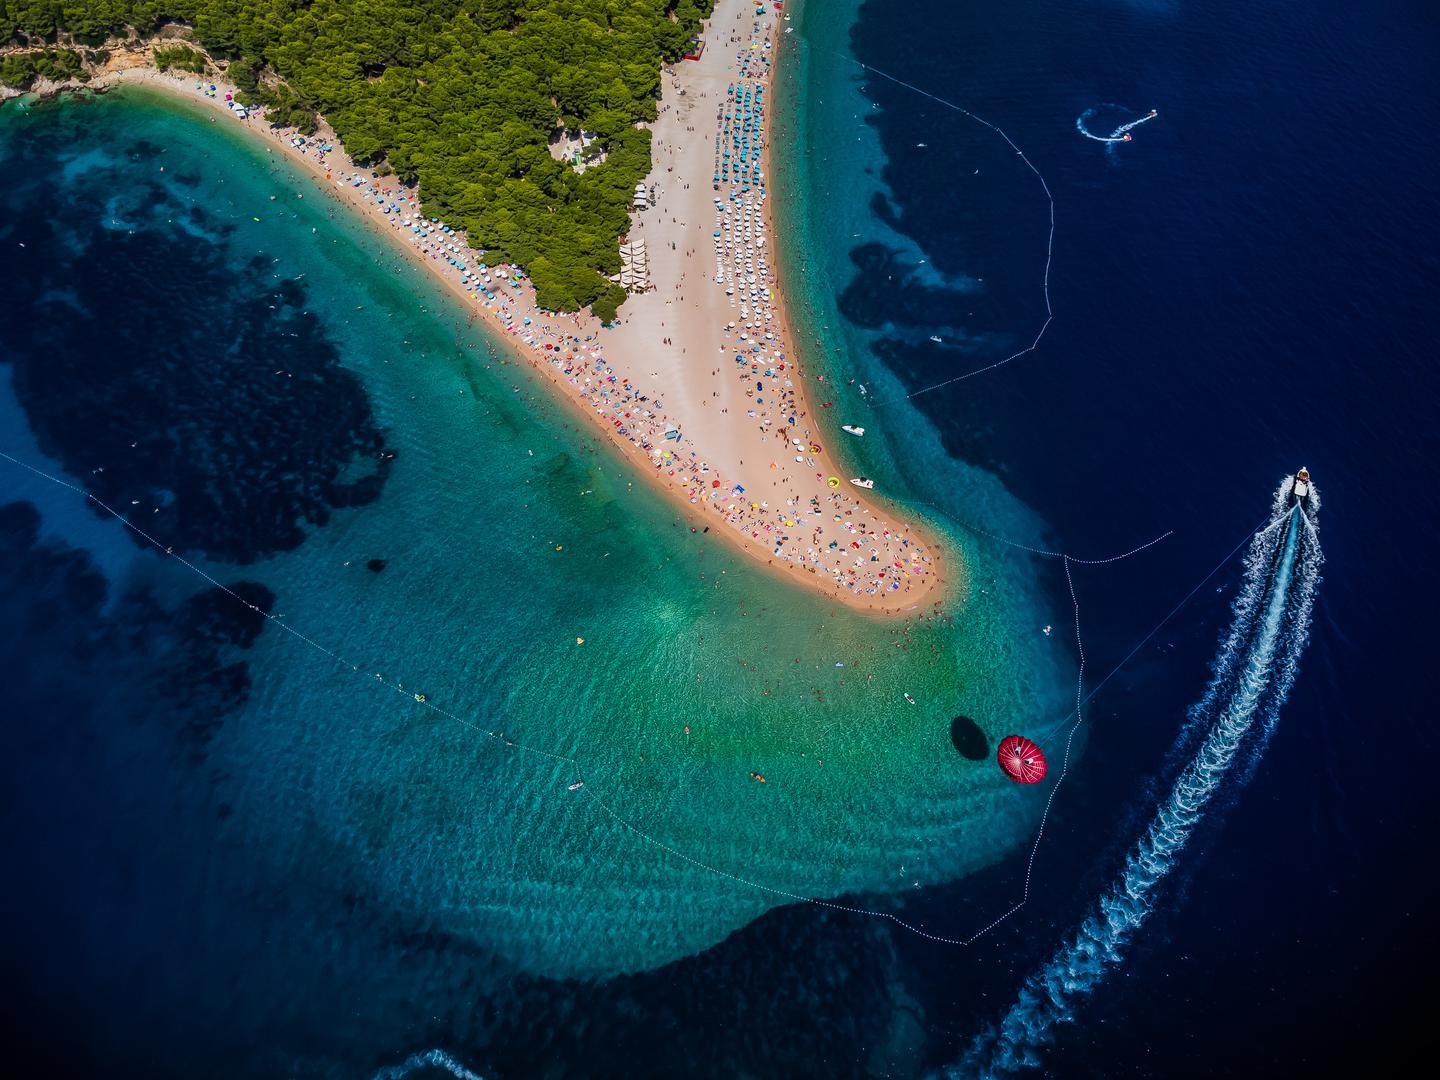 Ne samo da je more u Hrvatskoj čisto i plavo, ono je i najčišće u Europi. Prema podacima Europskog statističkog ureda, Hrvatska je na prvom mjestu po broju kupališta s vodom izvrsne kvalitete. Za više od 99% plaža diljem Hrvatske ocijenjeno je da imaju izvrsnu kakvoću mora za kupanje. Iza Hrvatske slijede Malta s 96,6% i Grčka s 95,8%.